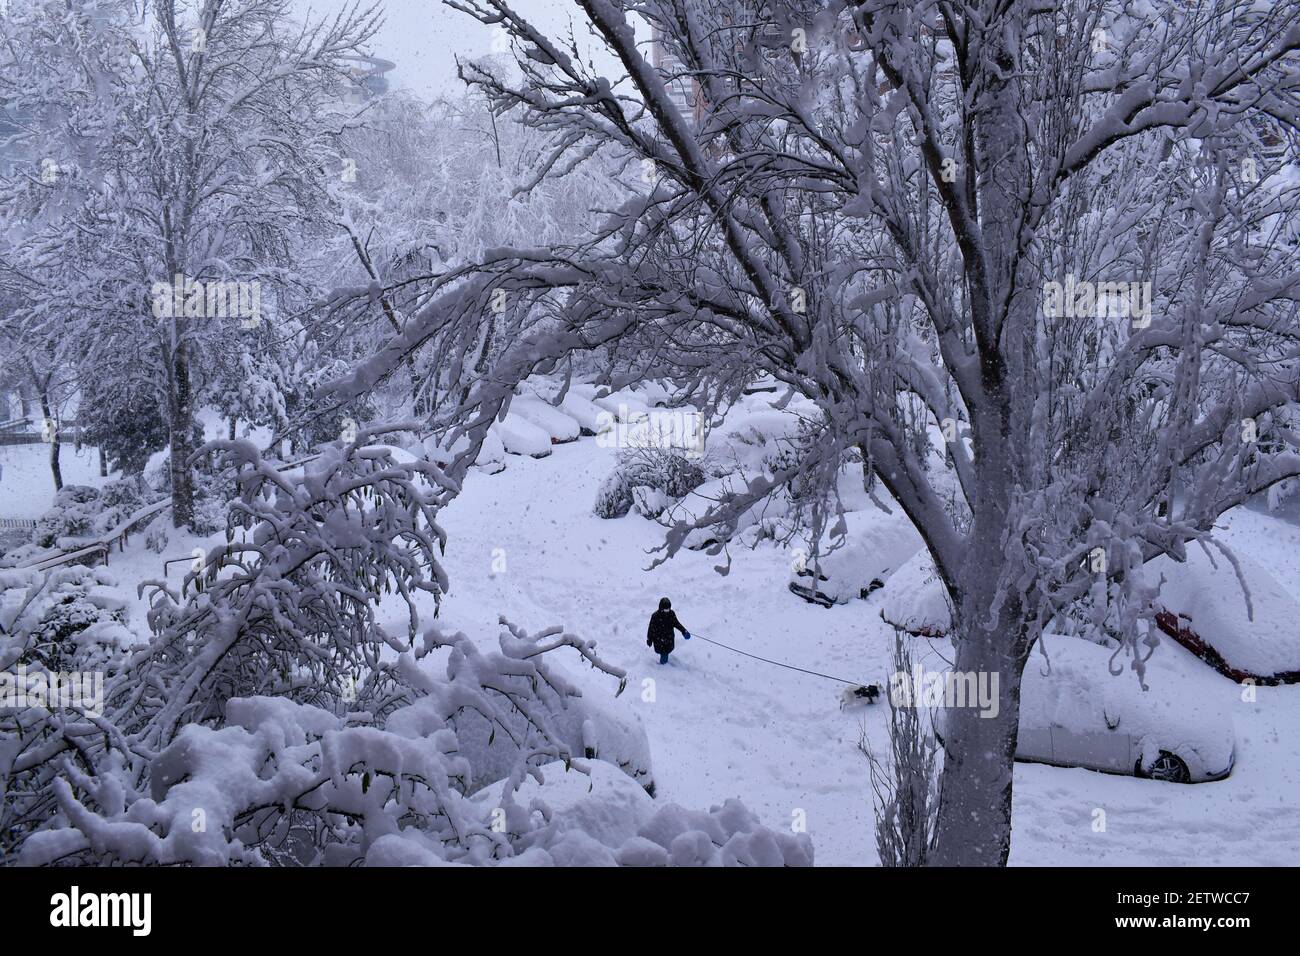 Neige dans la ville. En marchant votre animal sur la neige vierge, dans la grande chute de neige de Madrid, face à la tempête de neige Filomena en Espagne Banque D'Images